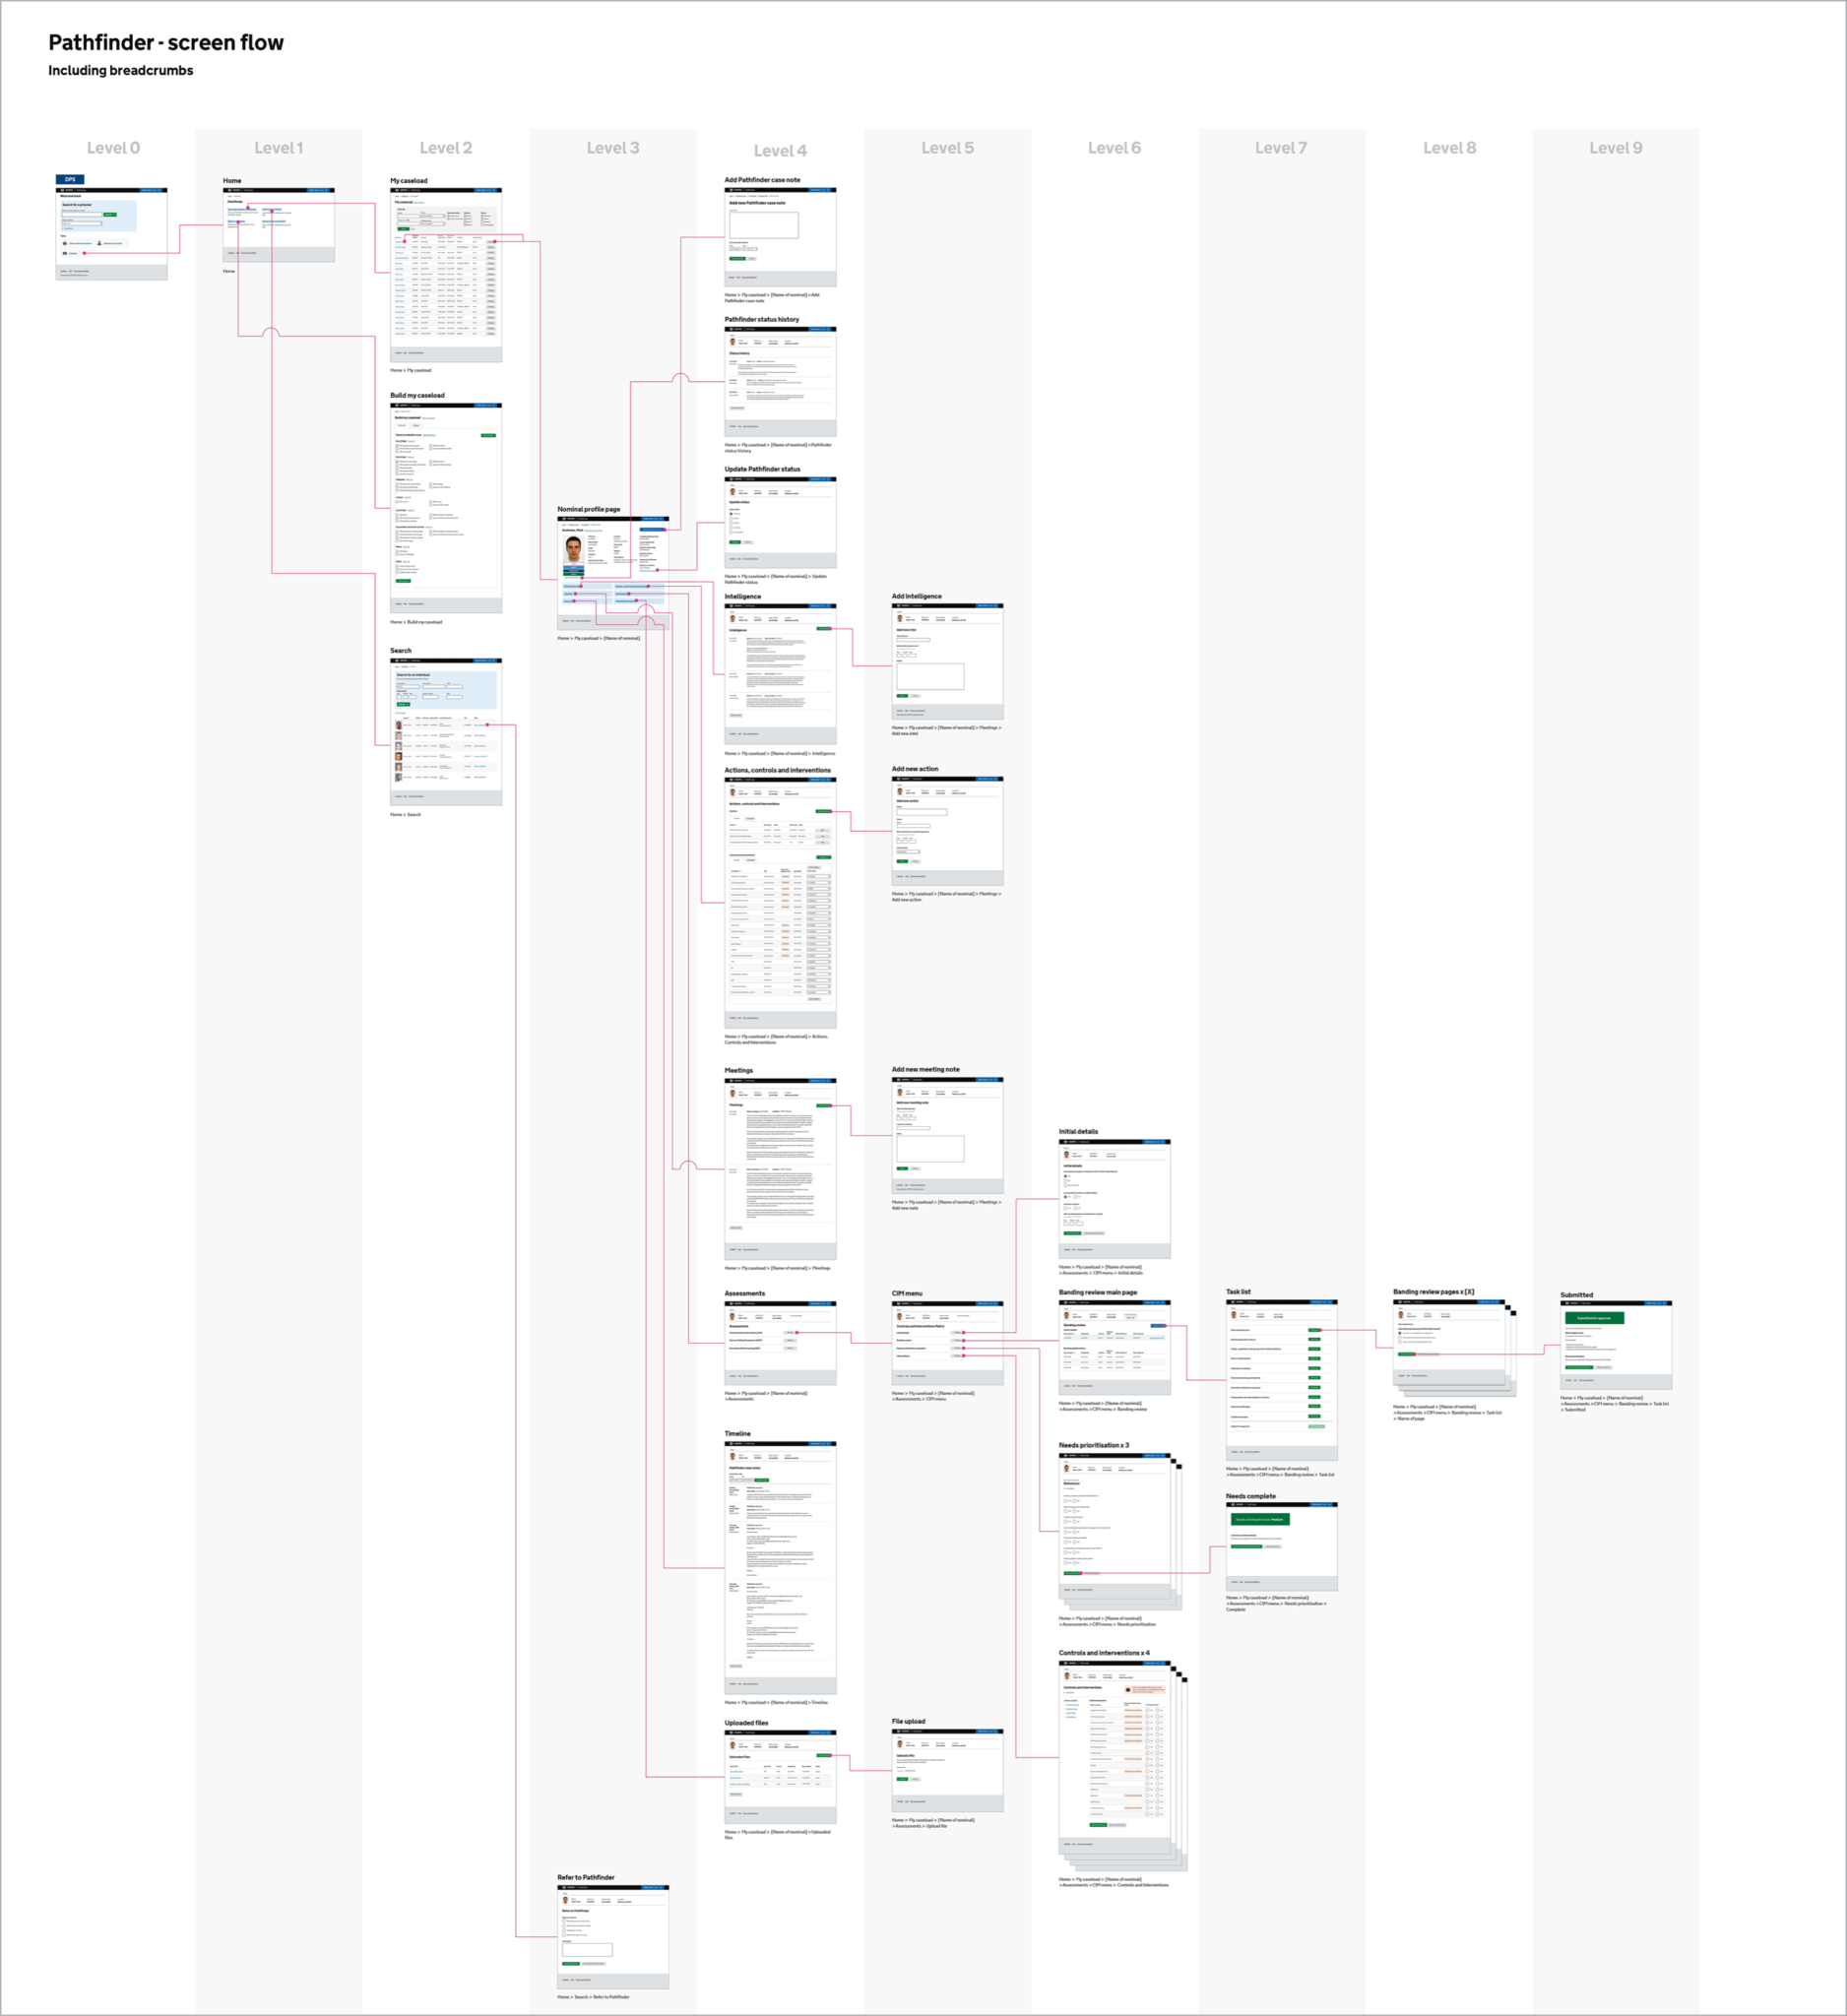 Screen flow diagram